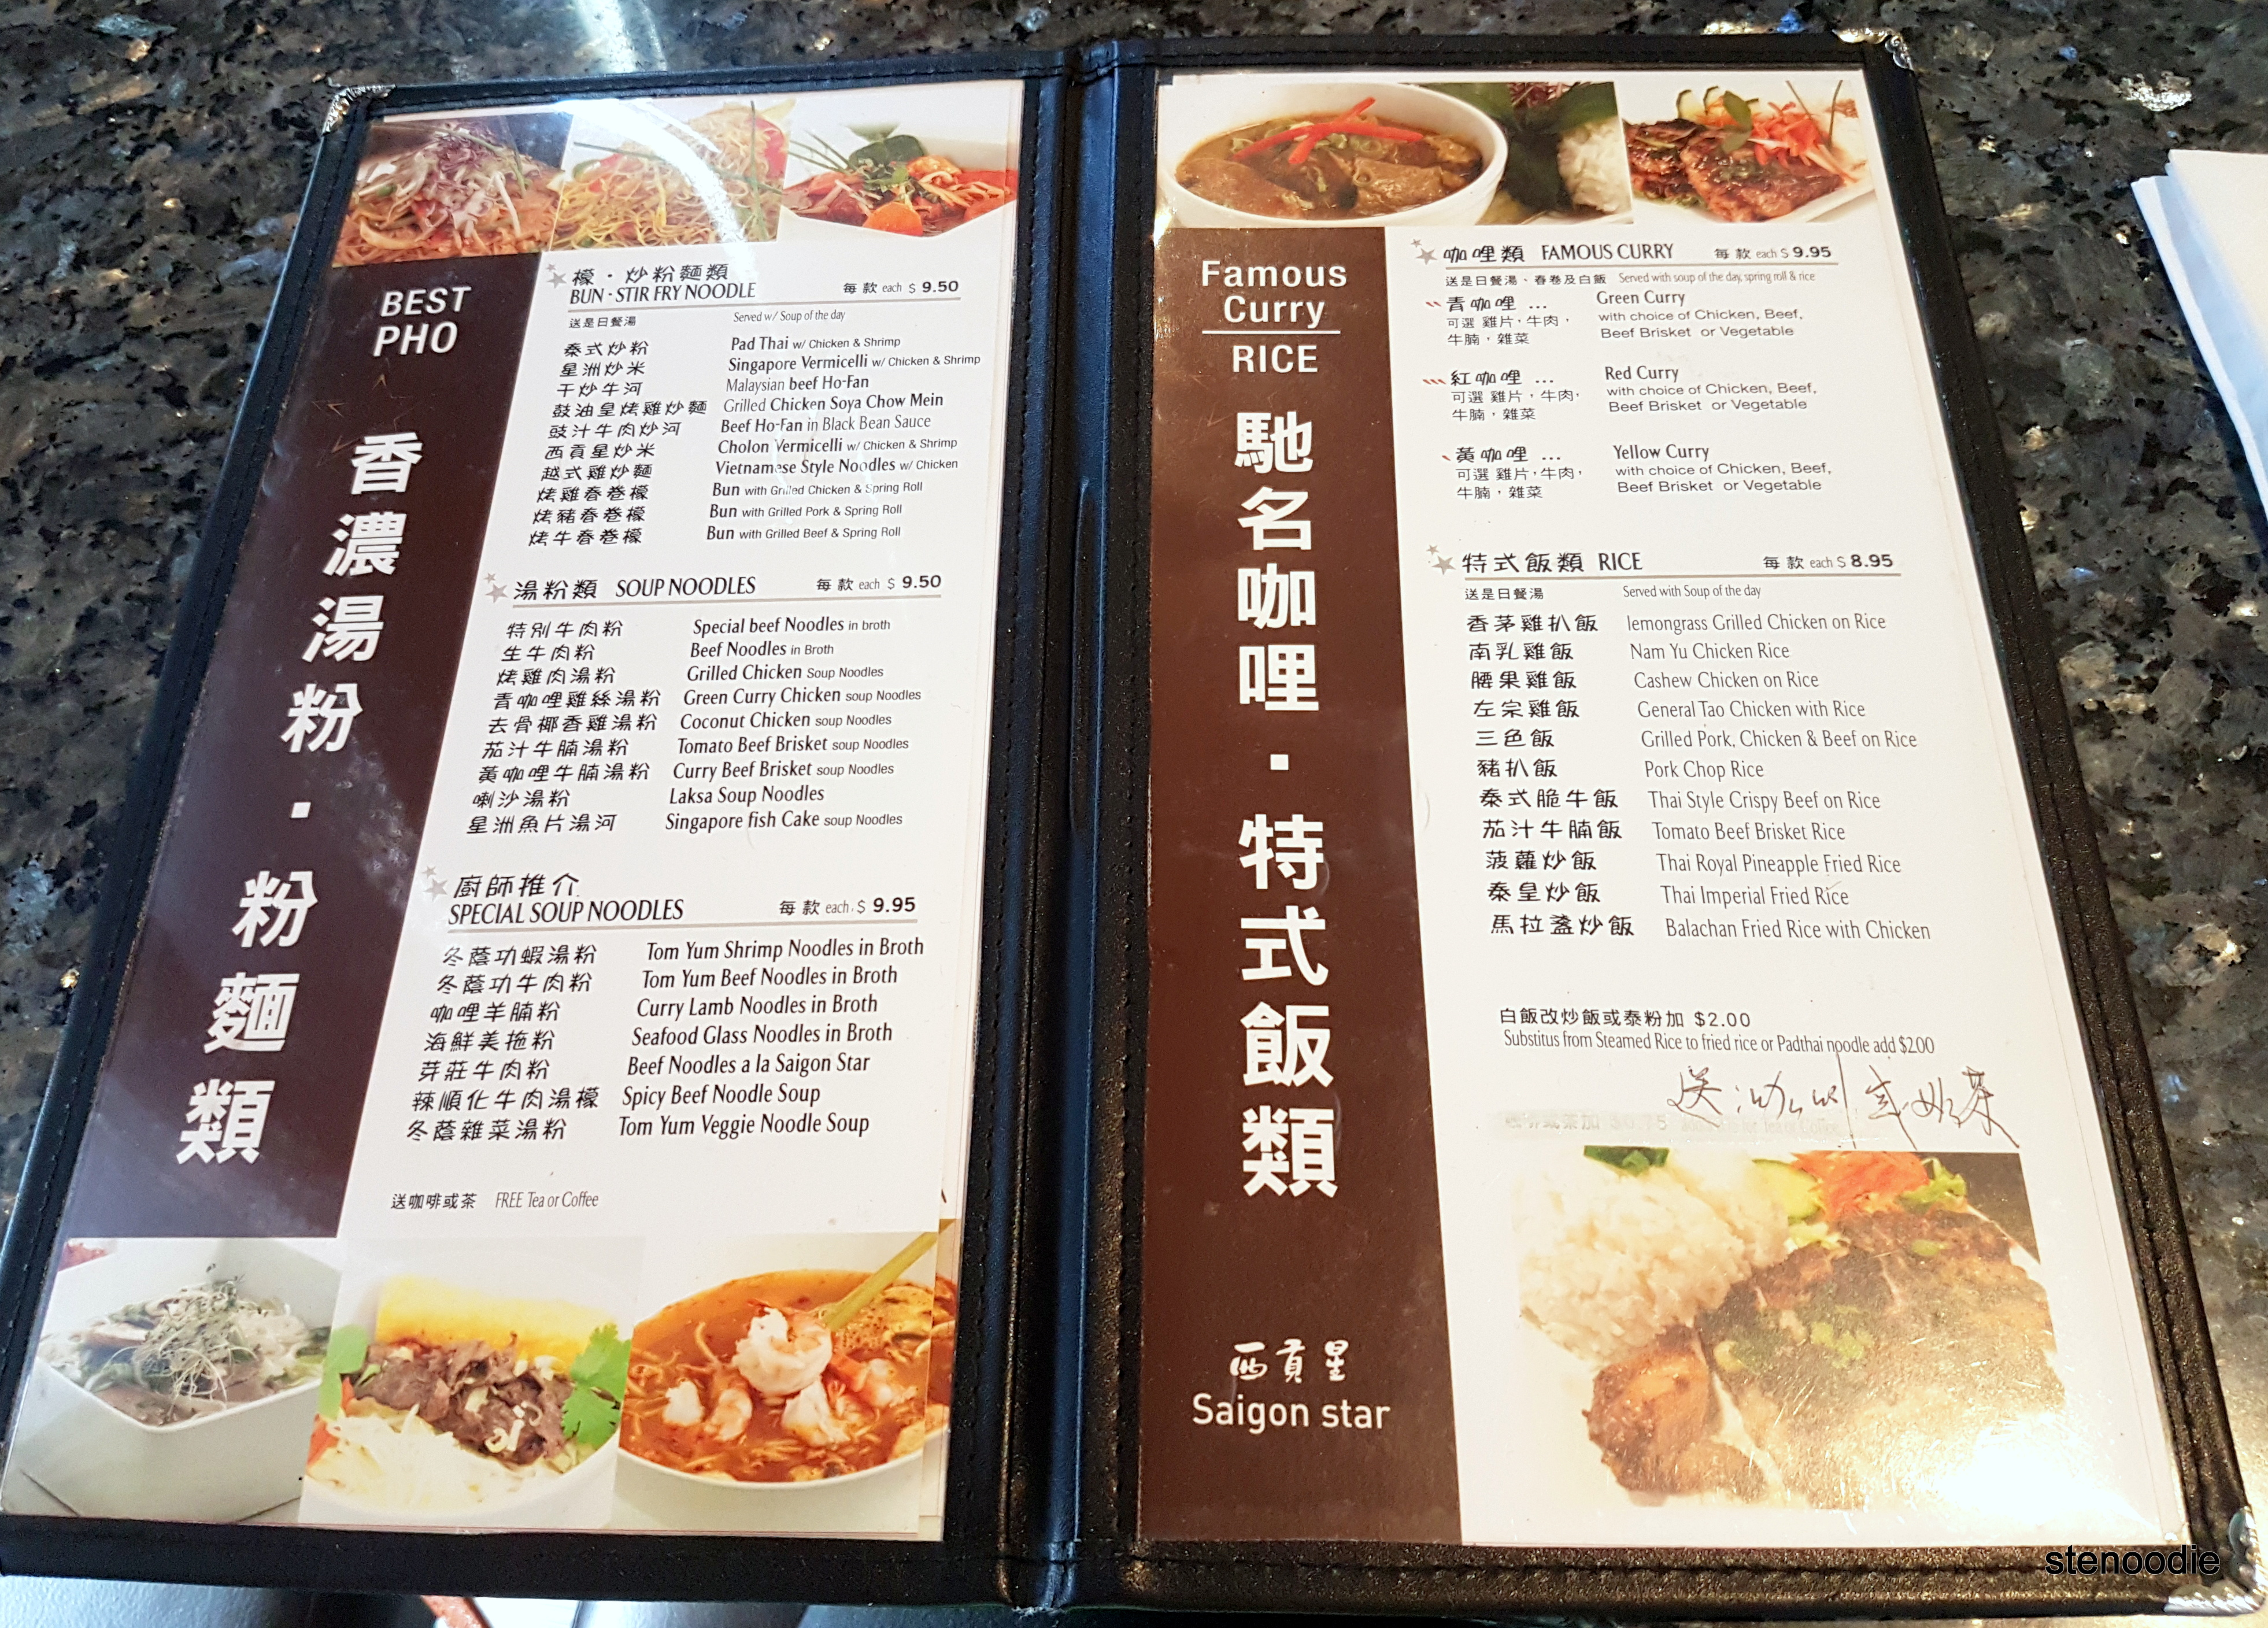  Saigon Star menu and prices